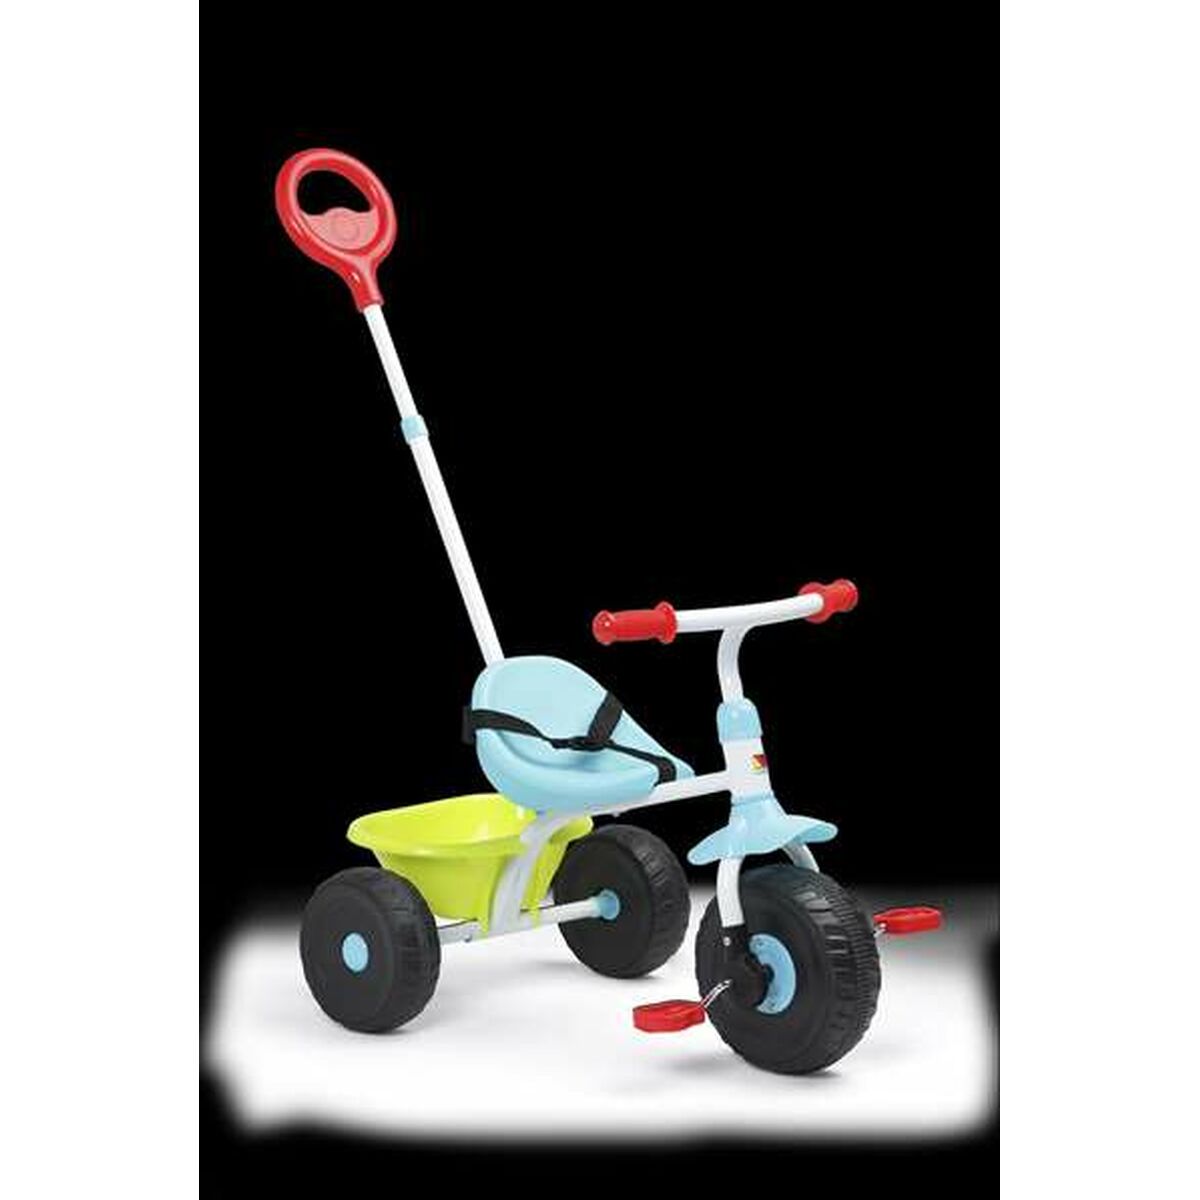 Trehjuling Moltó Urban Trike 3 i 1-Leksaker och spel, Sport och utomhus-Moltó-peaceofhome.se